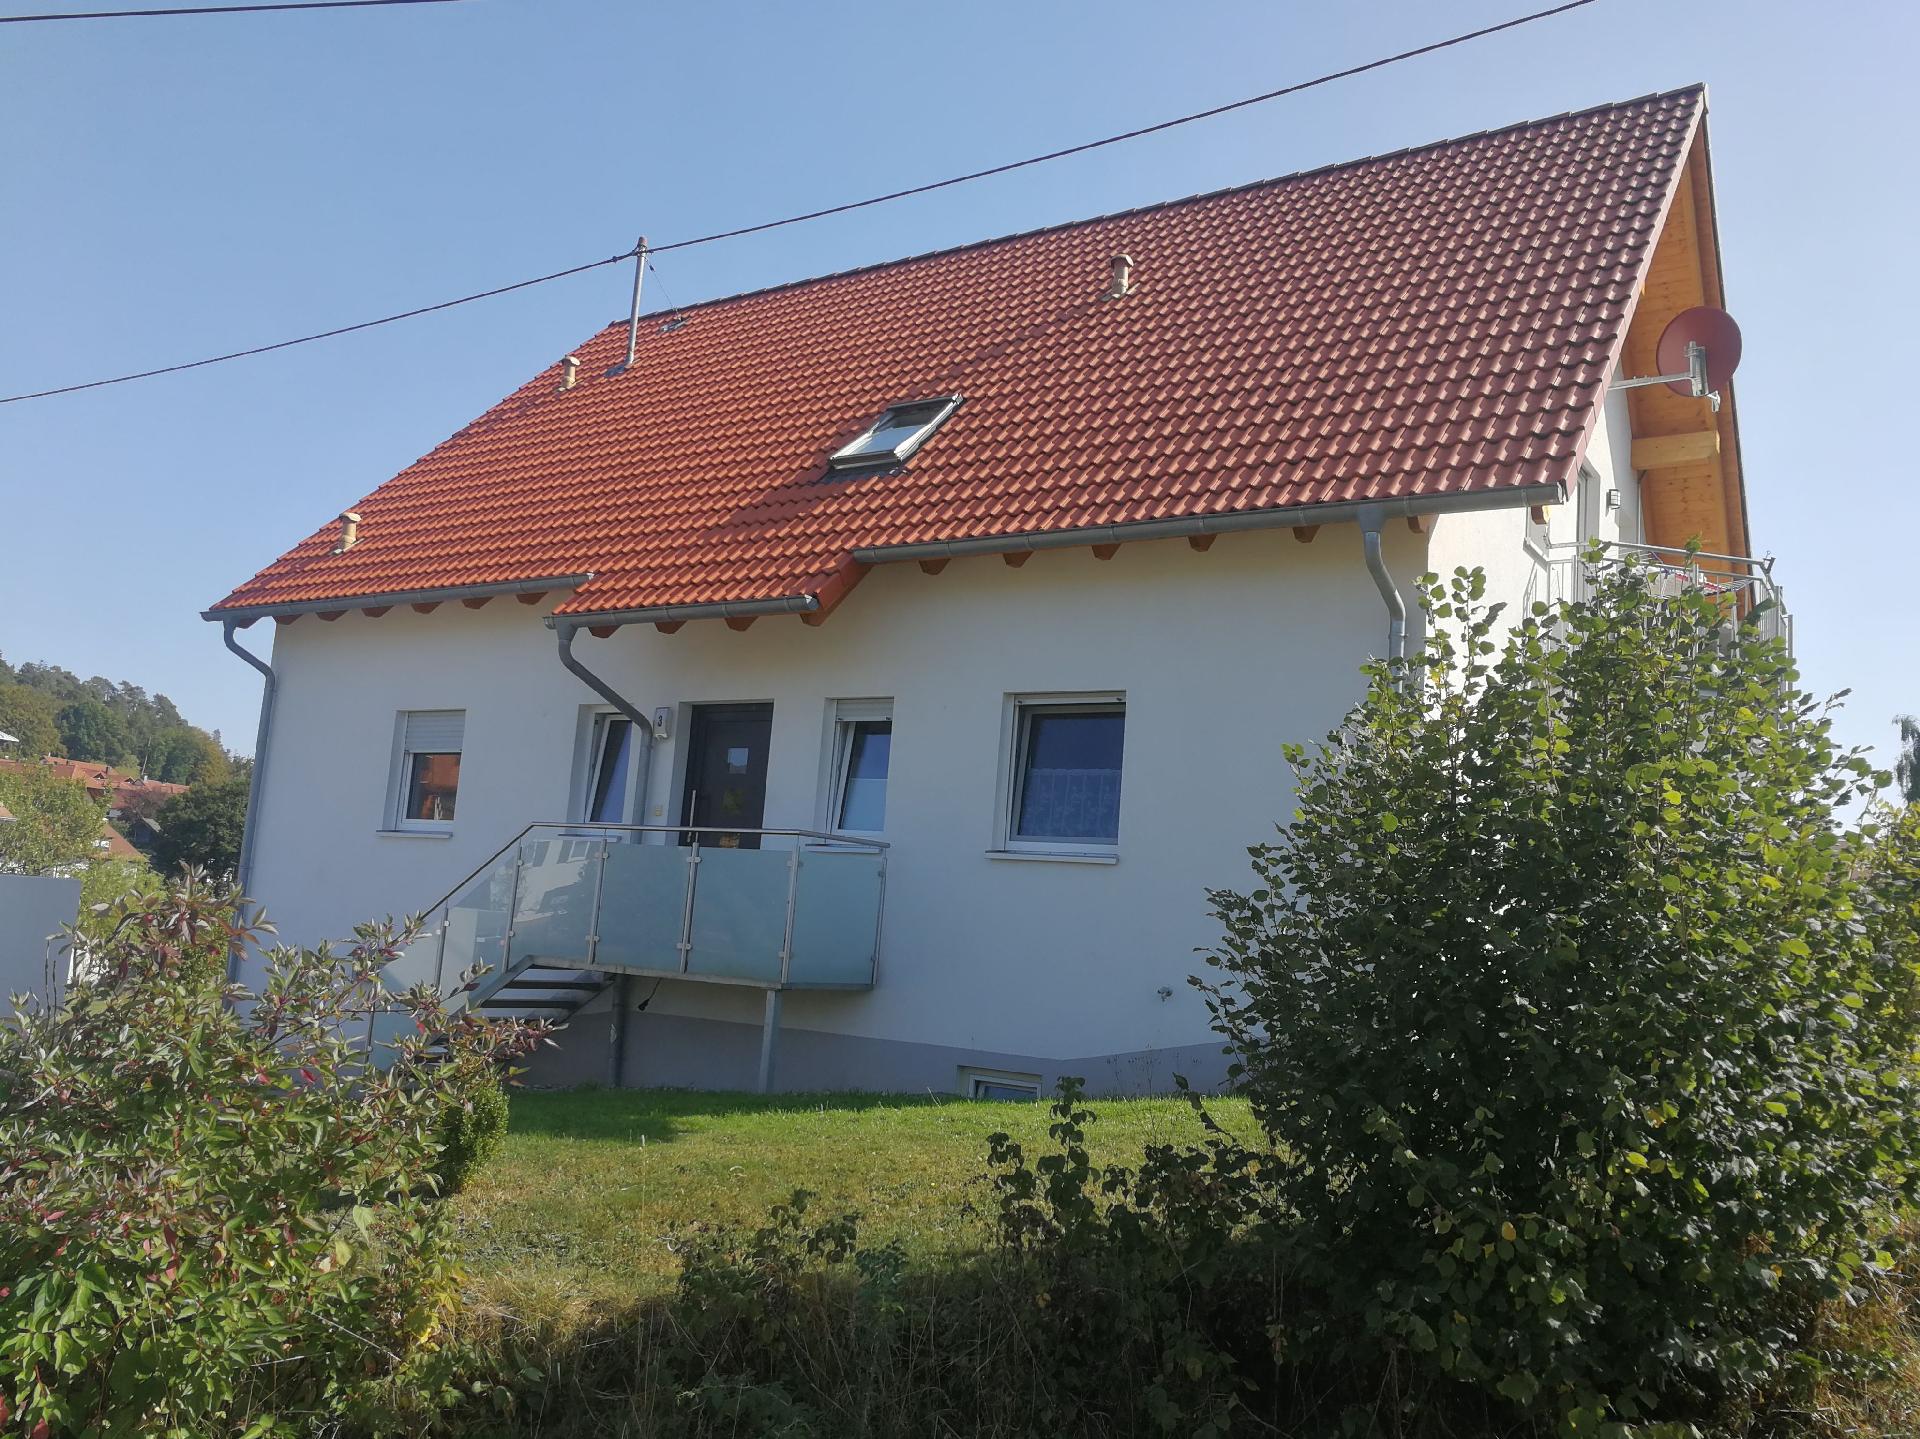 Wohnung in Speßhardt mit Terrasse, Grill und   Schwarzwald